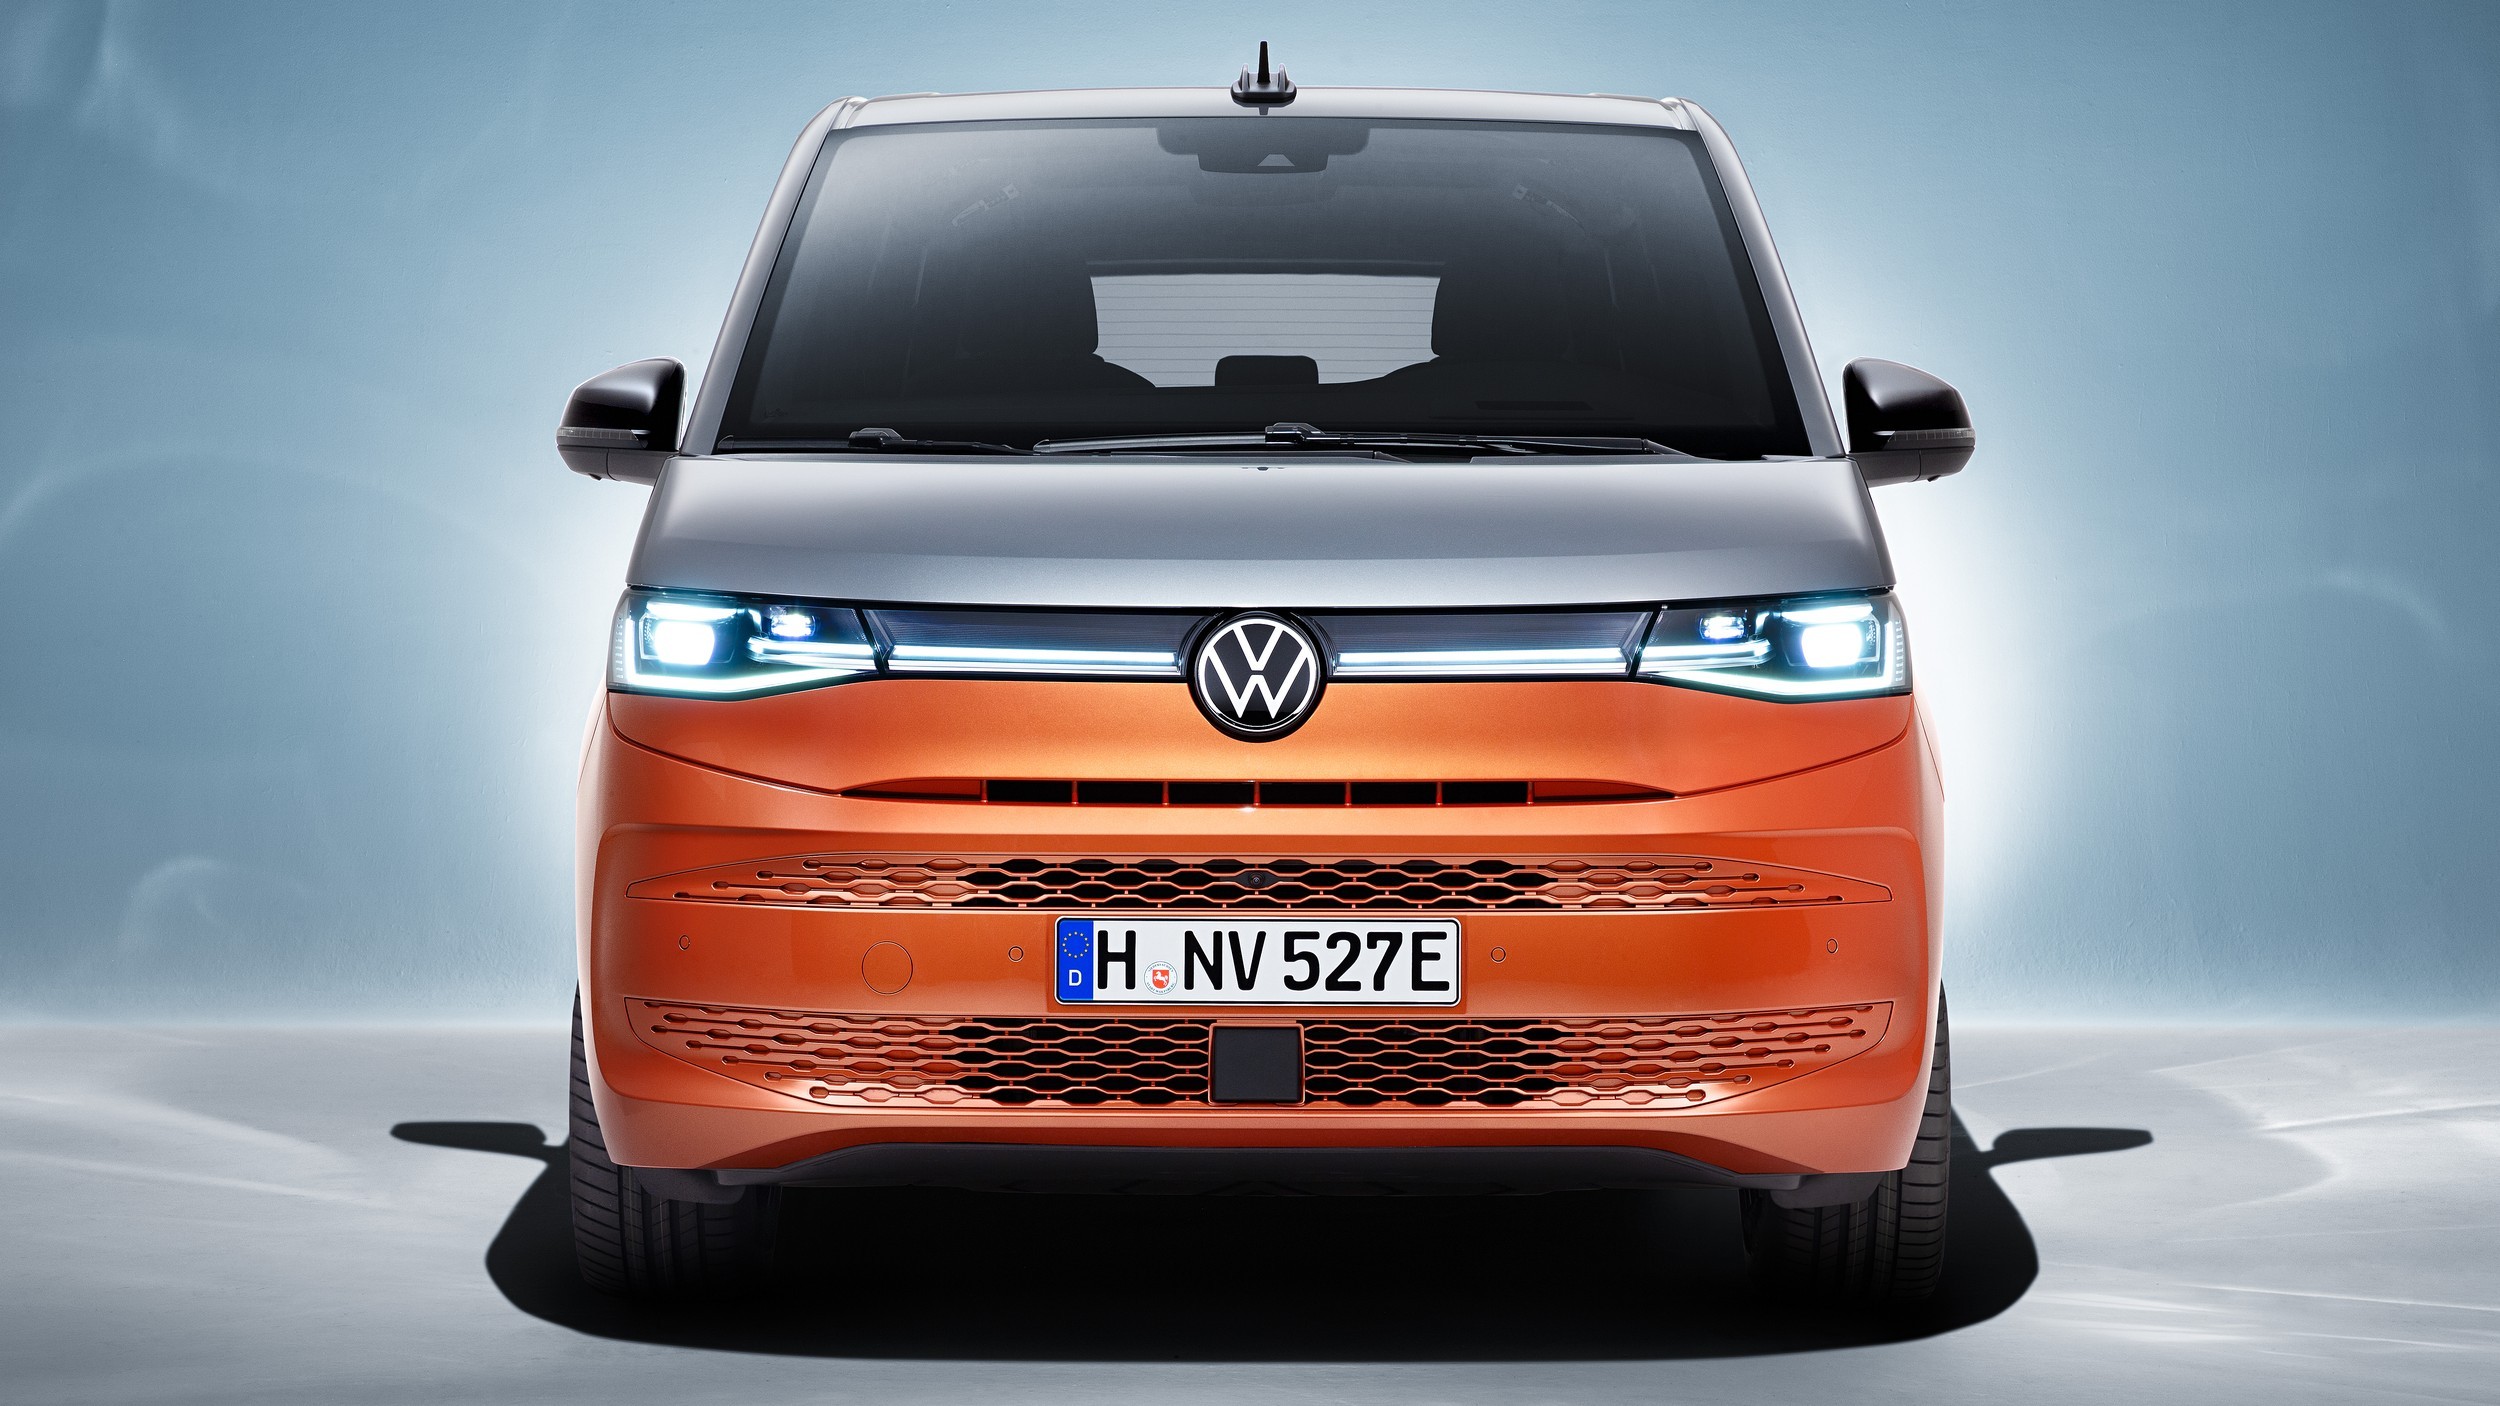 Не преемник, а дополнение: Volkswagen T7 будет доступен только в пассажирском исполнении